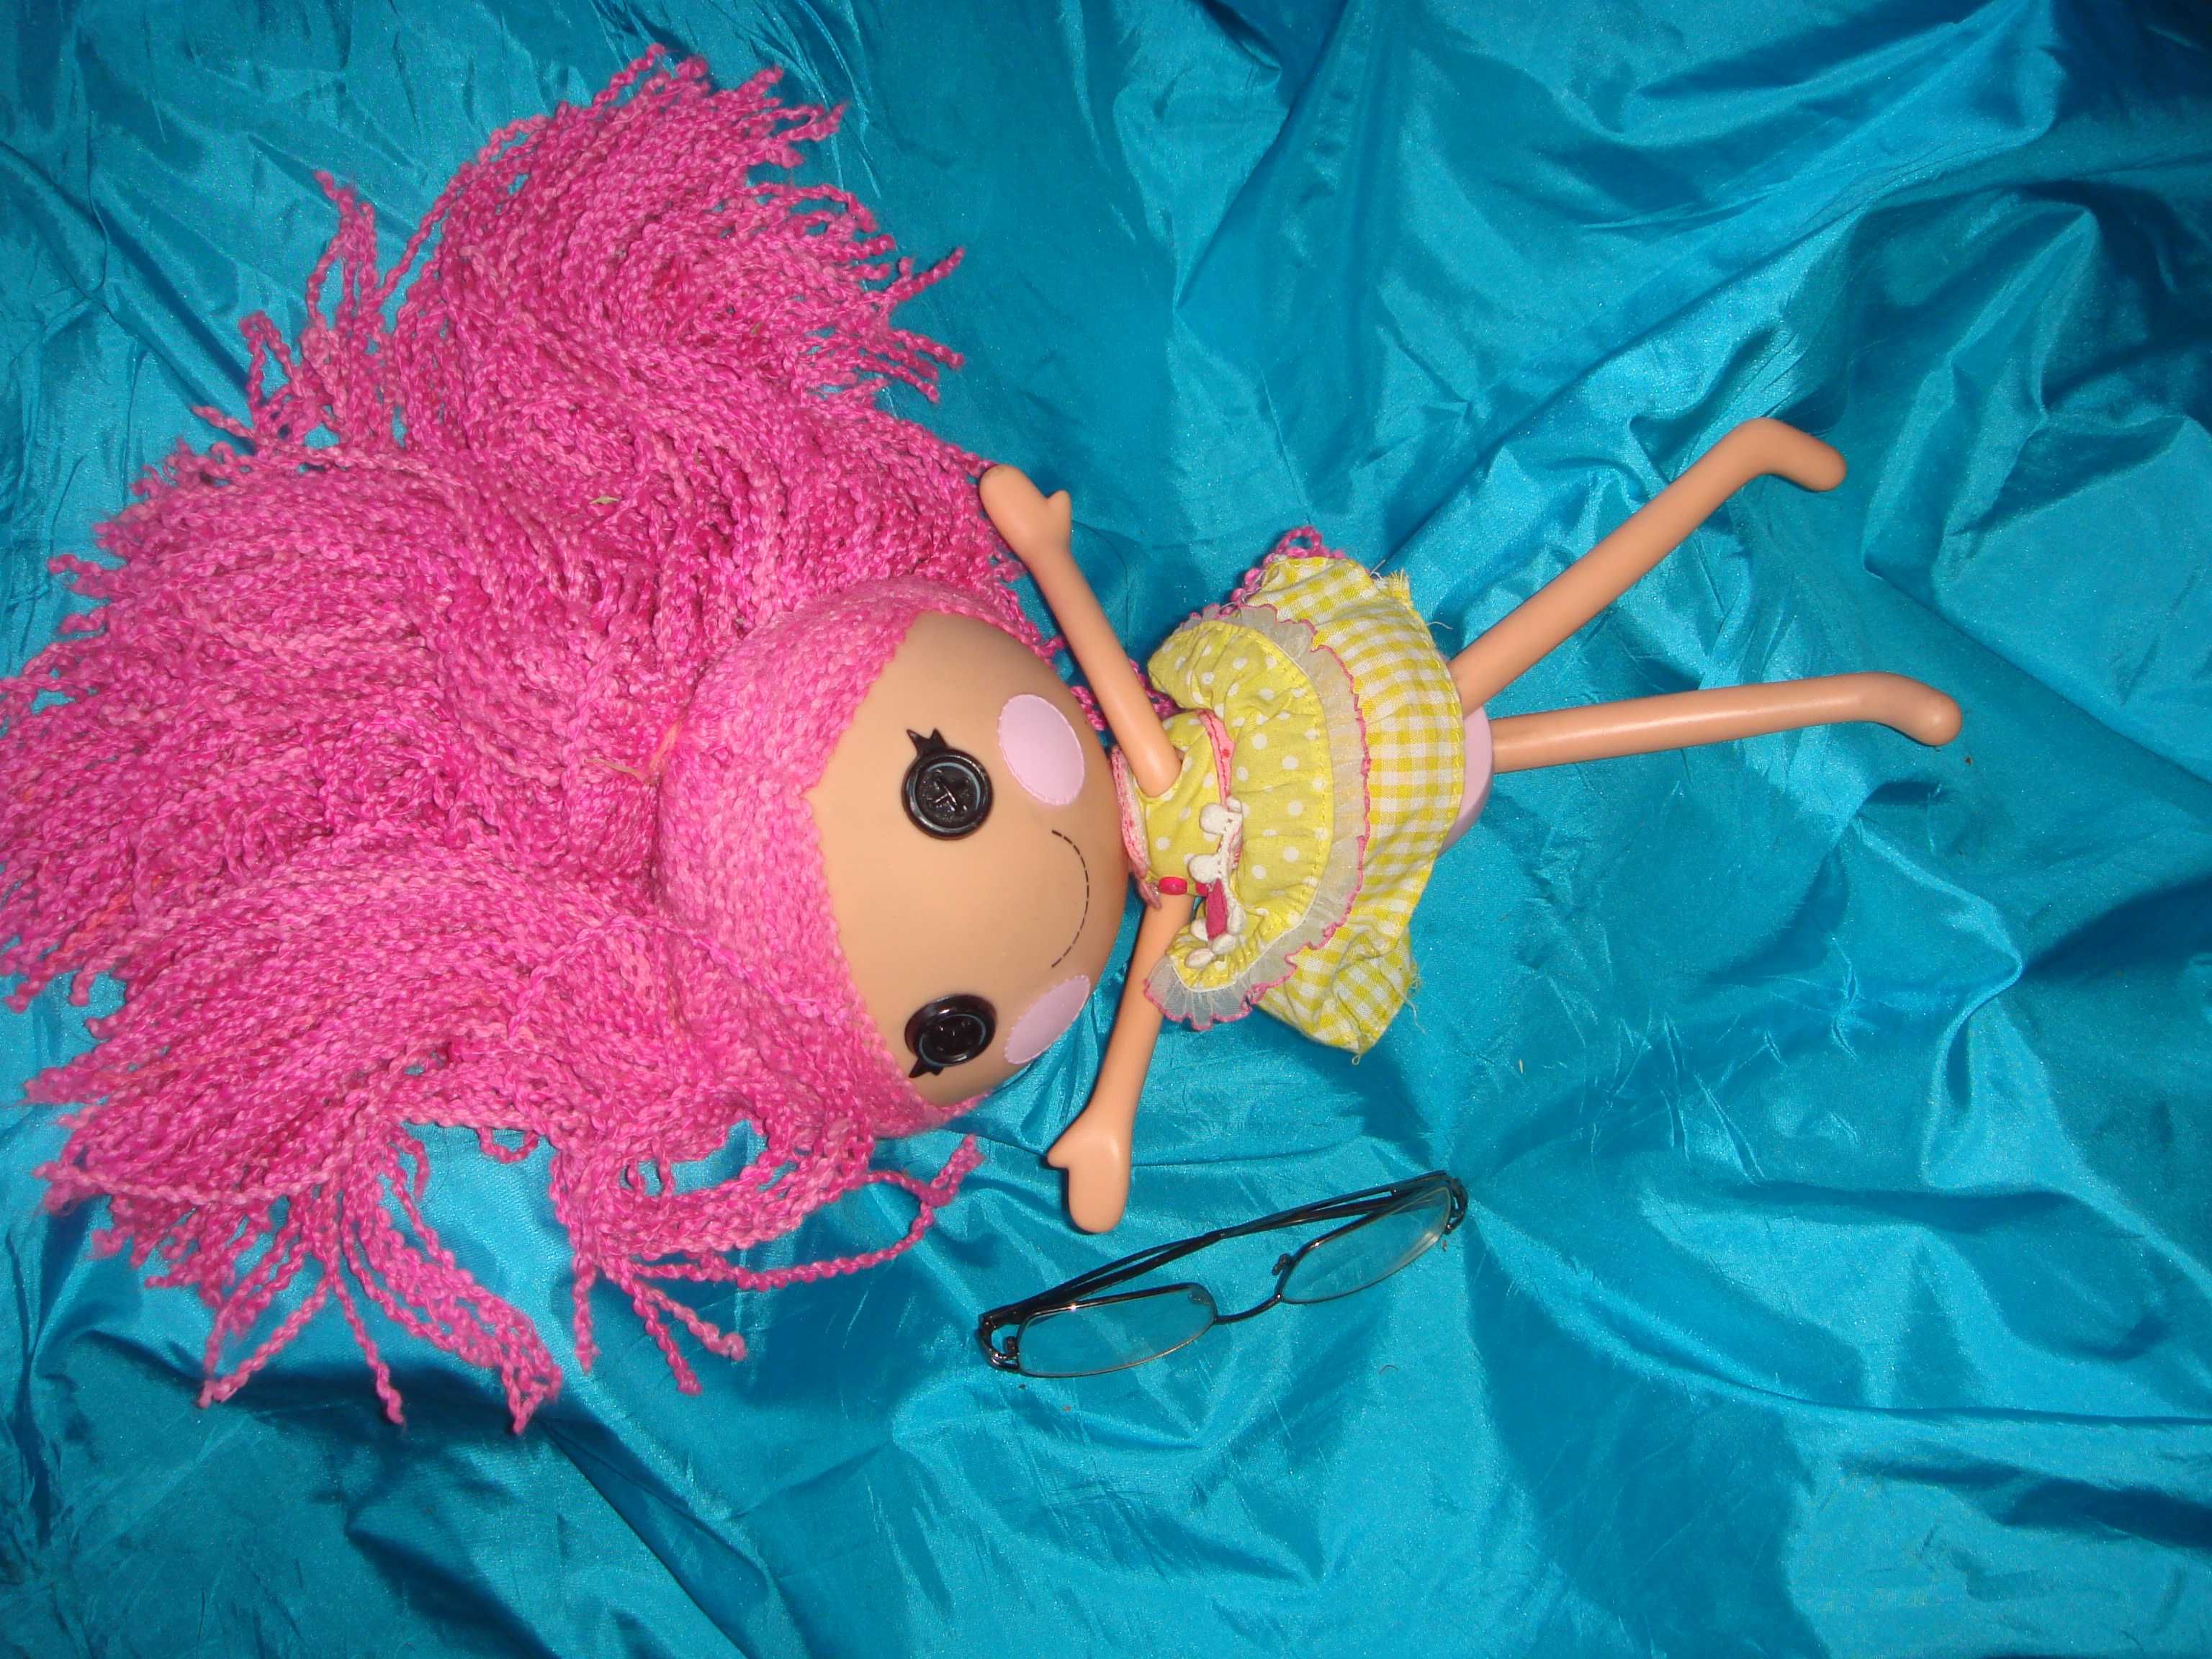 Кукла 2013 MGA Entertainment фирменная коллекционная в новом состоянии